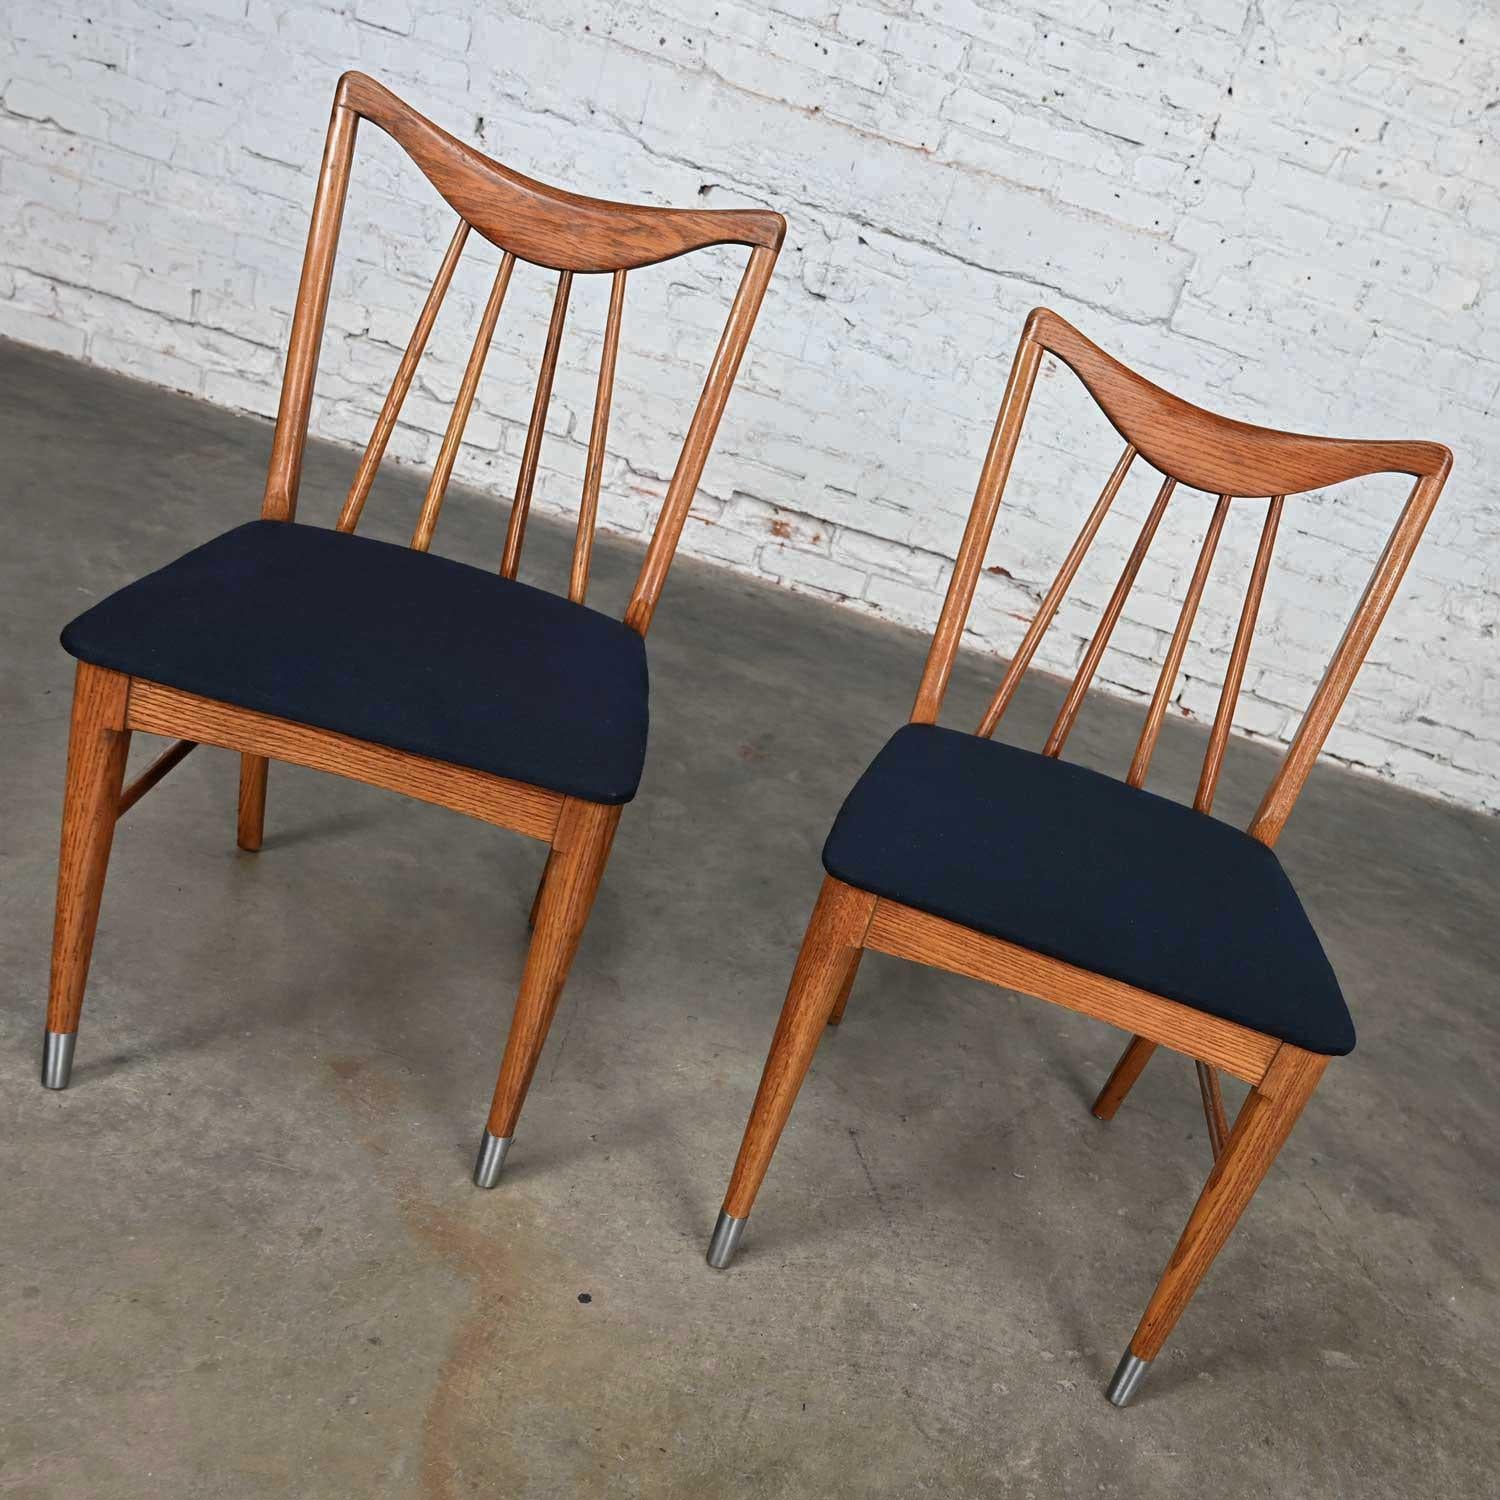 Magnifique paire de chaises de salle à manger ou d'appoint Keller Furniture Valkerie II Line par Edmond J. Spence, moderne du milieu du siècle dernier. Composé de cadres en chêne, de sièges tapissés de tissu bleu et de sabots chromés sur les pieds